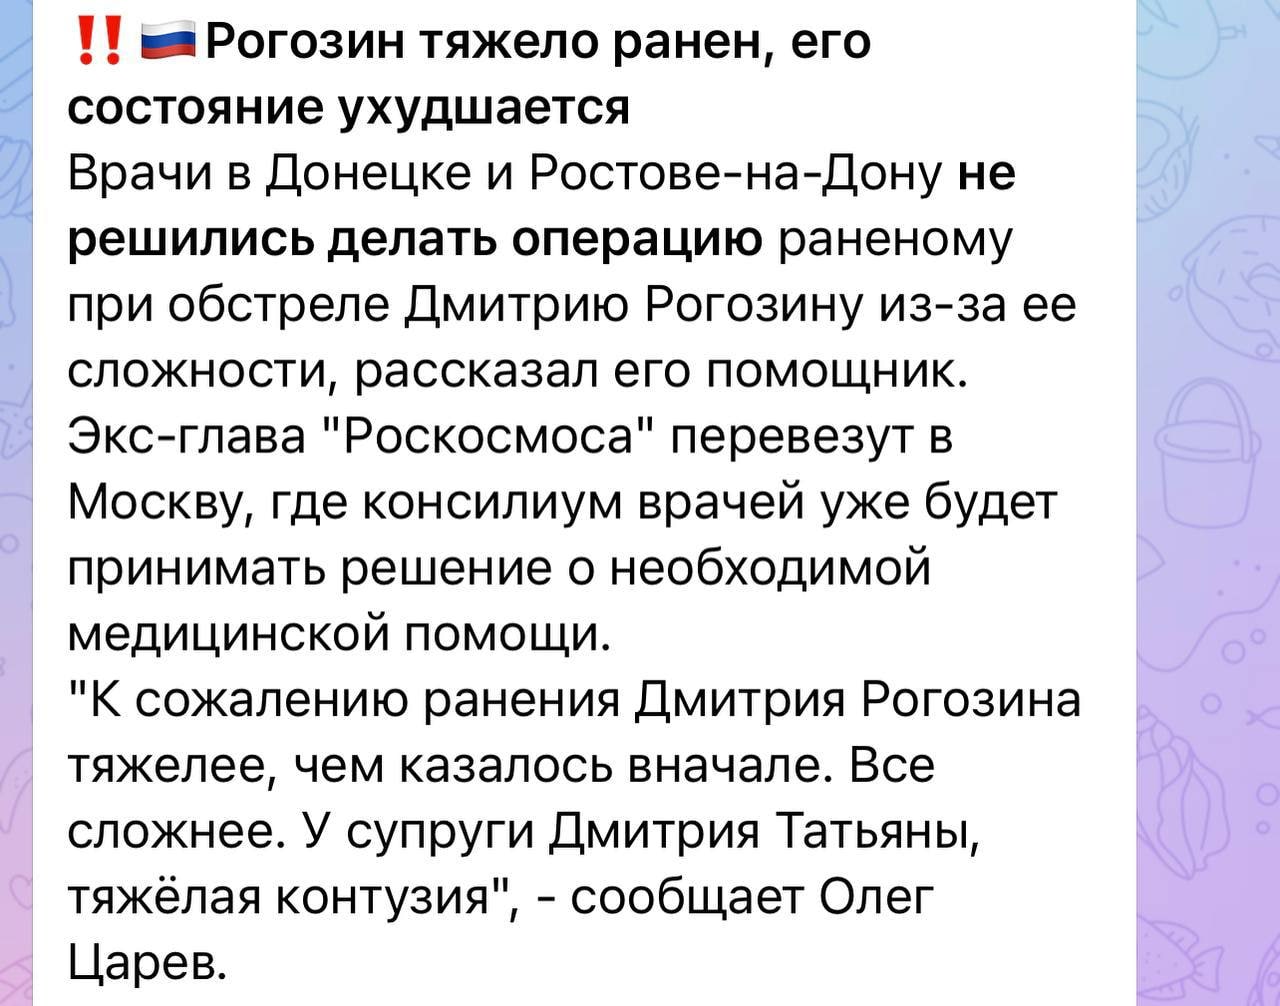 Состояние Рогозина ухудшается: врачи в Донецке не решились делать операцию раненому в зад экс-главе «Роскосмоса» из-за ее сложности 